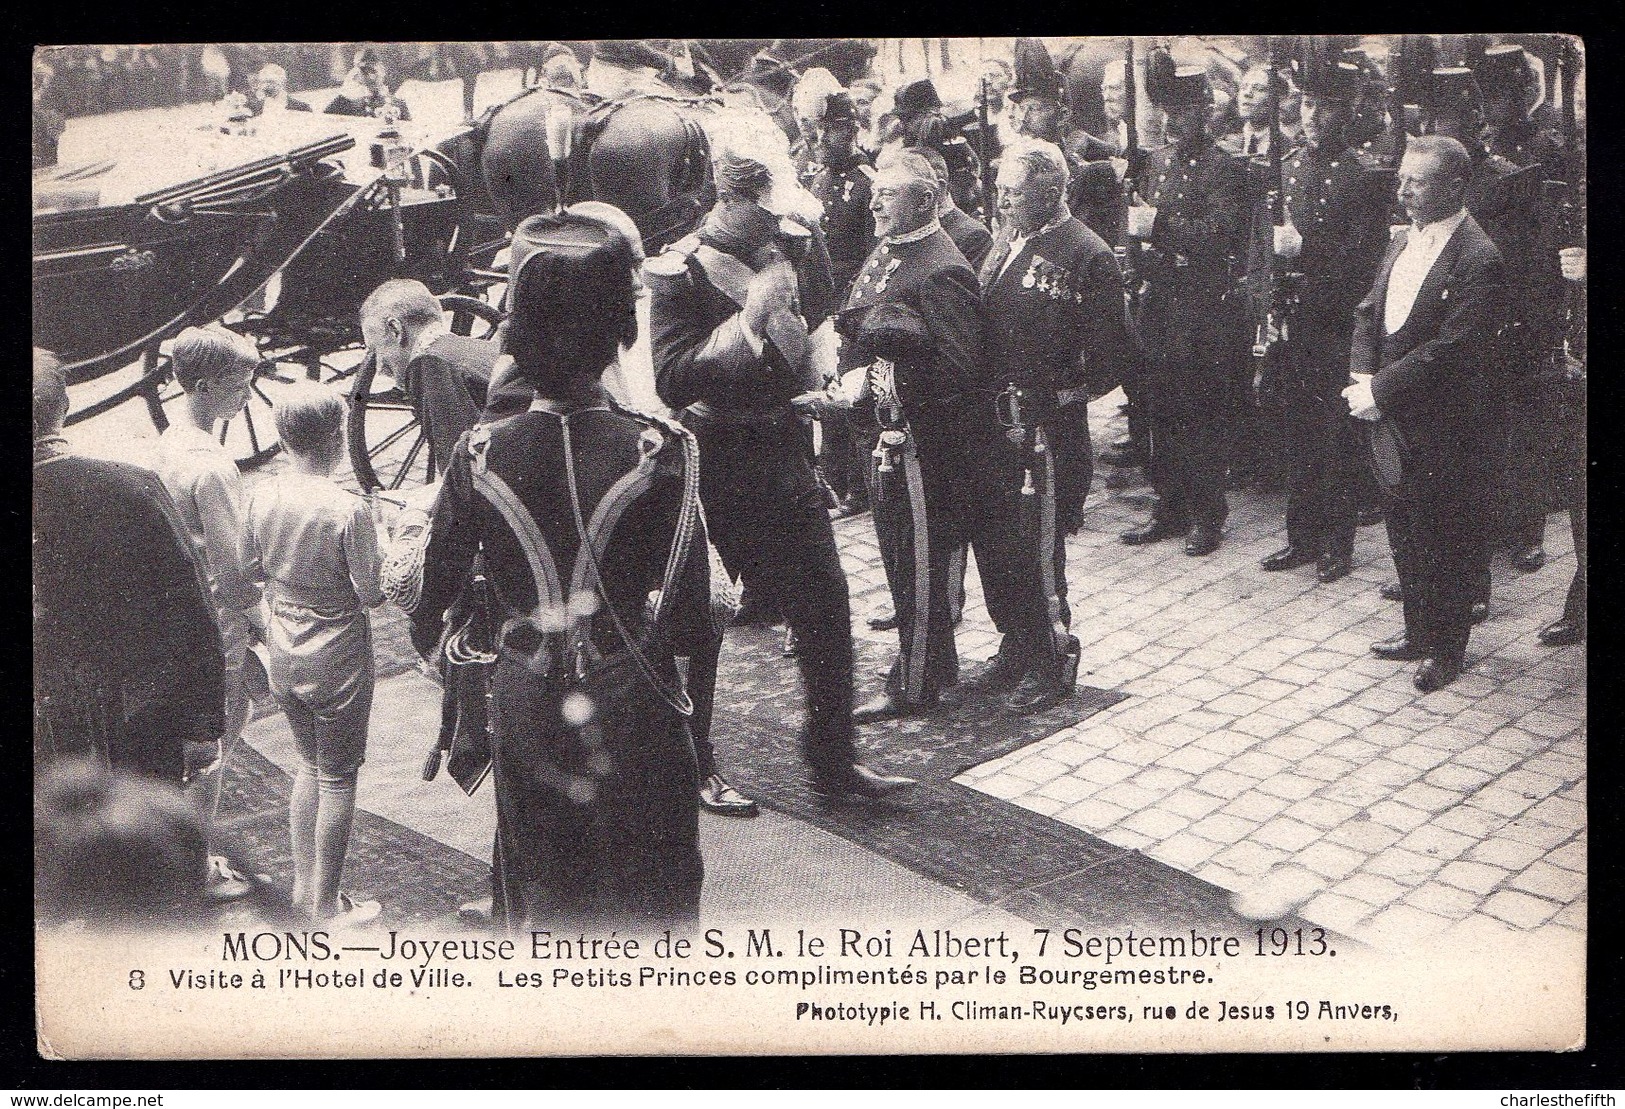 MONS 1913 - JOYEUSE ENTREE ALBERT I - CPA Nr 8 - LES PETITS PRINCES COMPLIMENTES PAR LE BOURGMESTRE - Rare ! - Mons